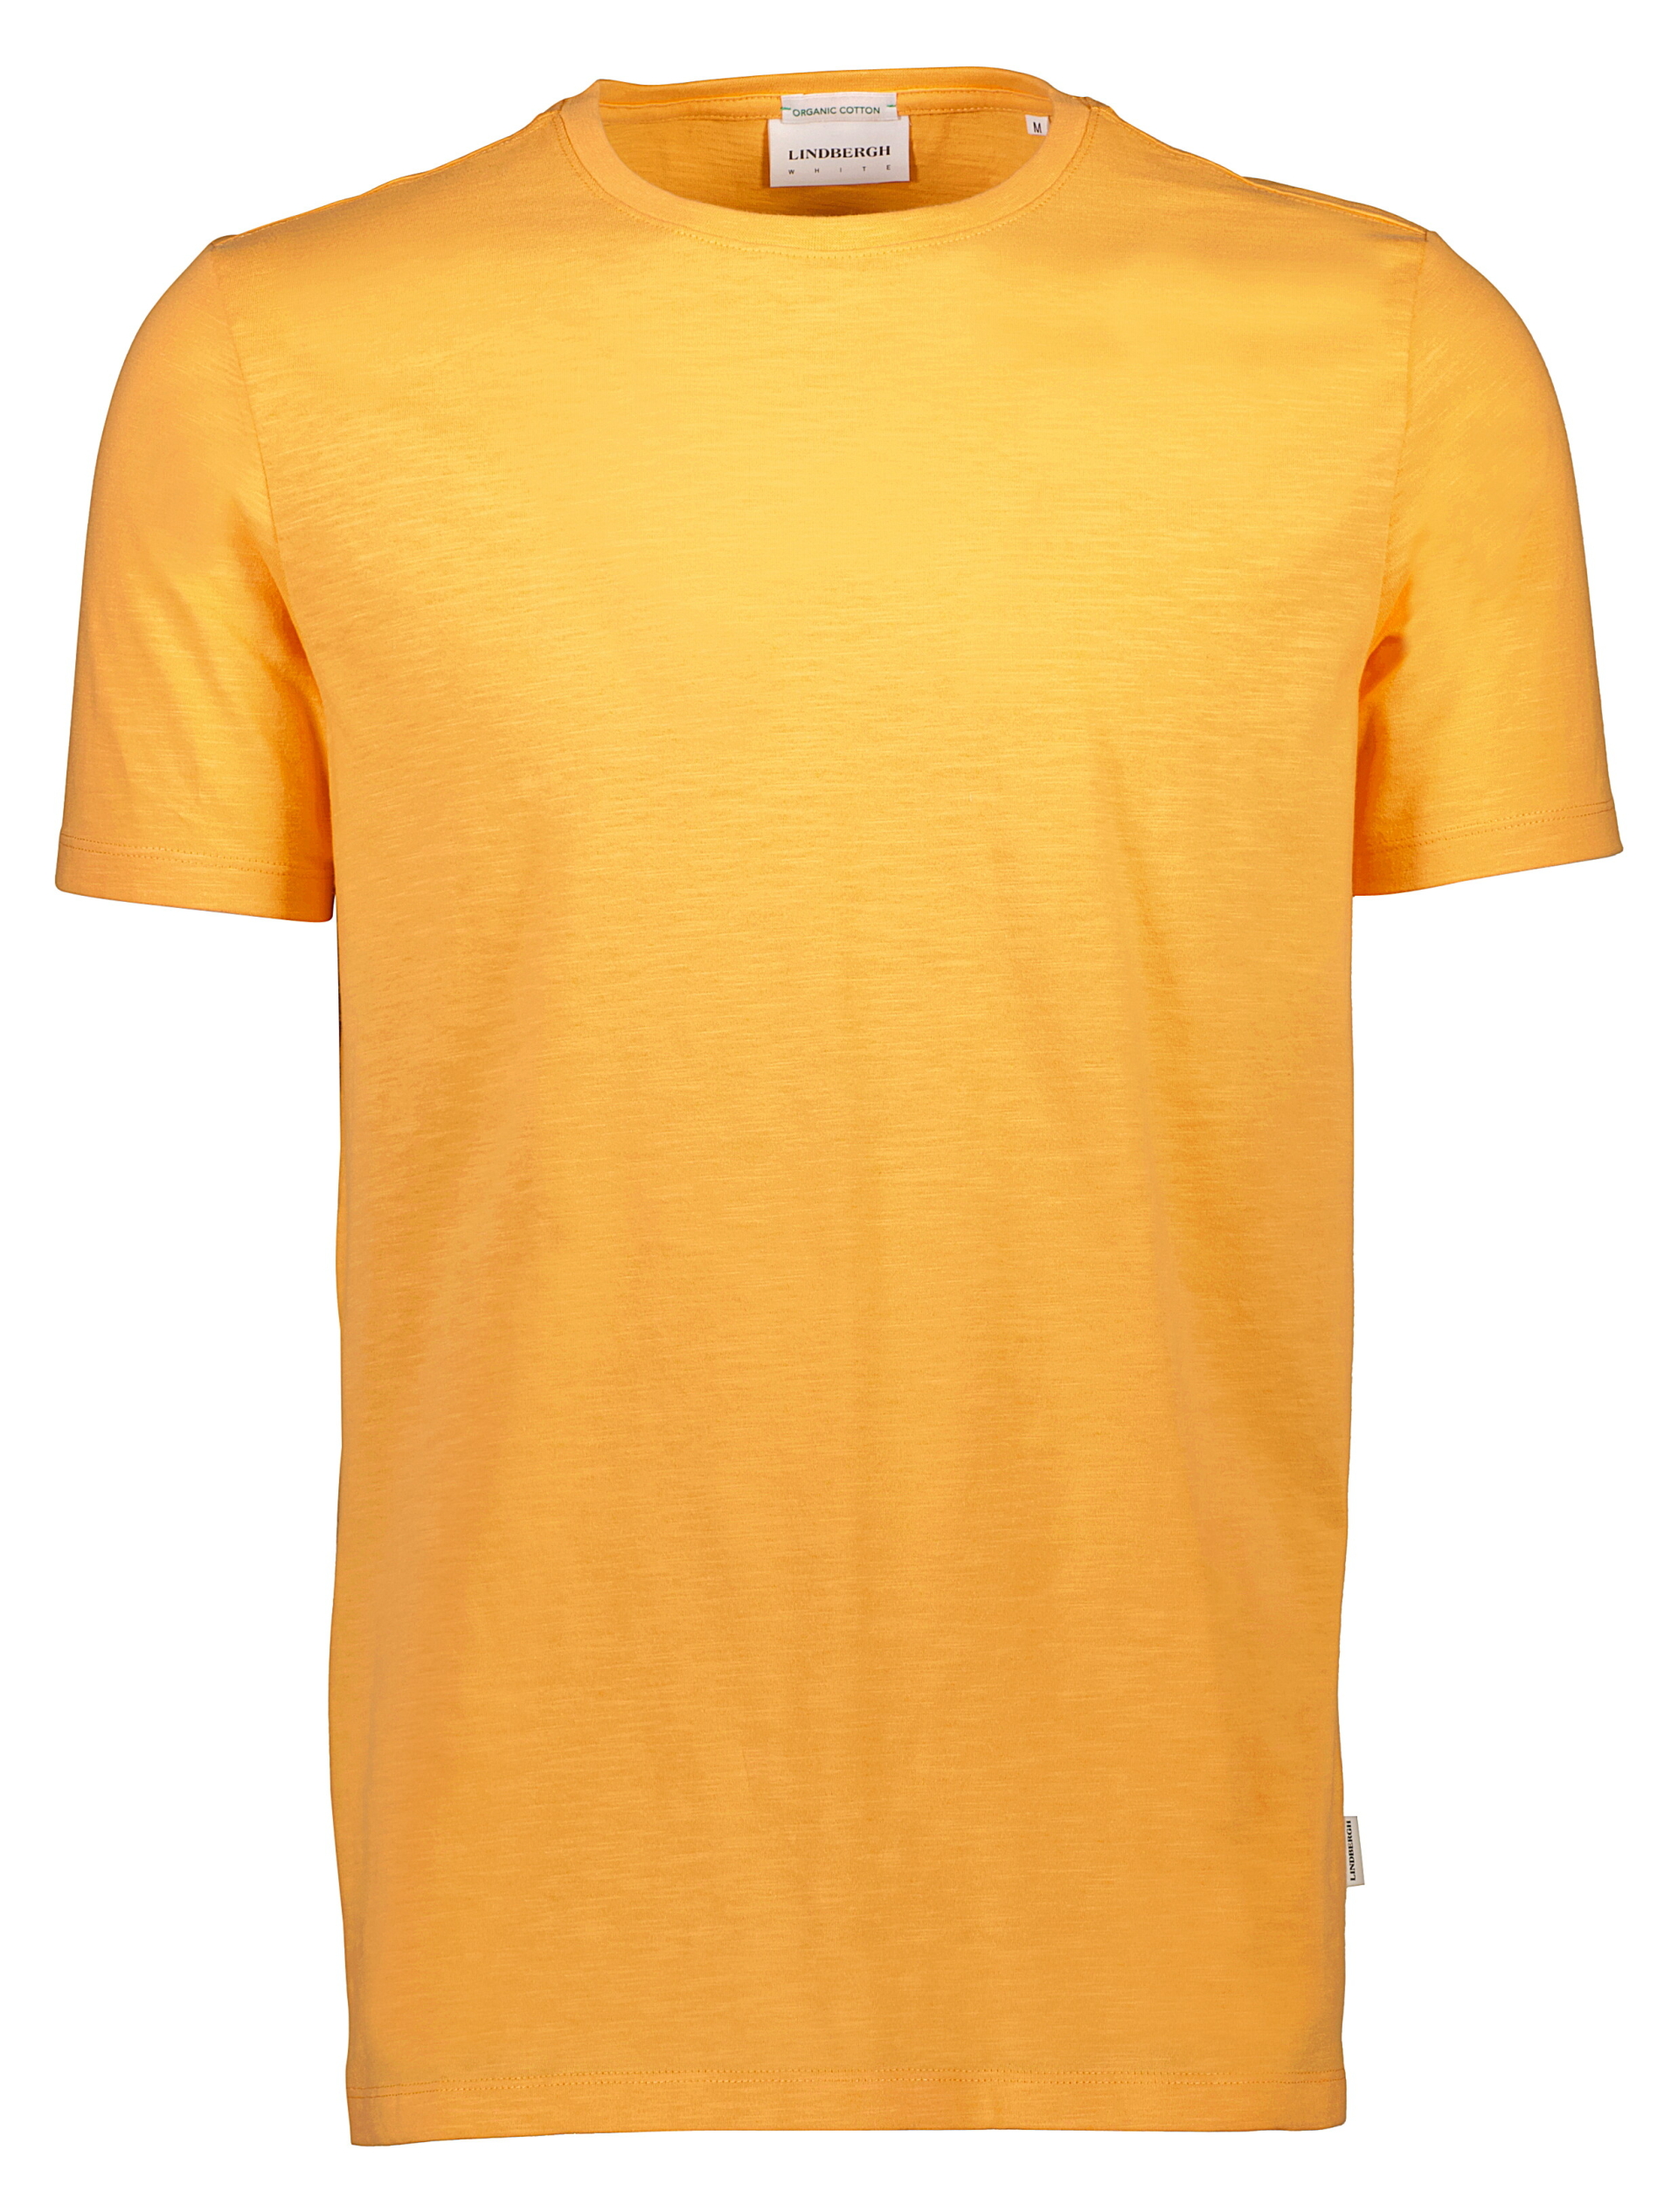 Lindbergh T-shirt orange / pastel orange